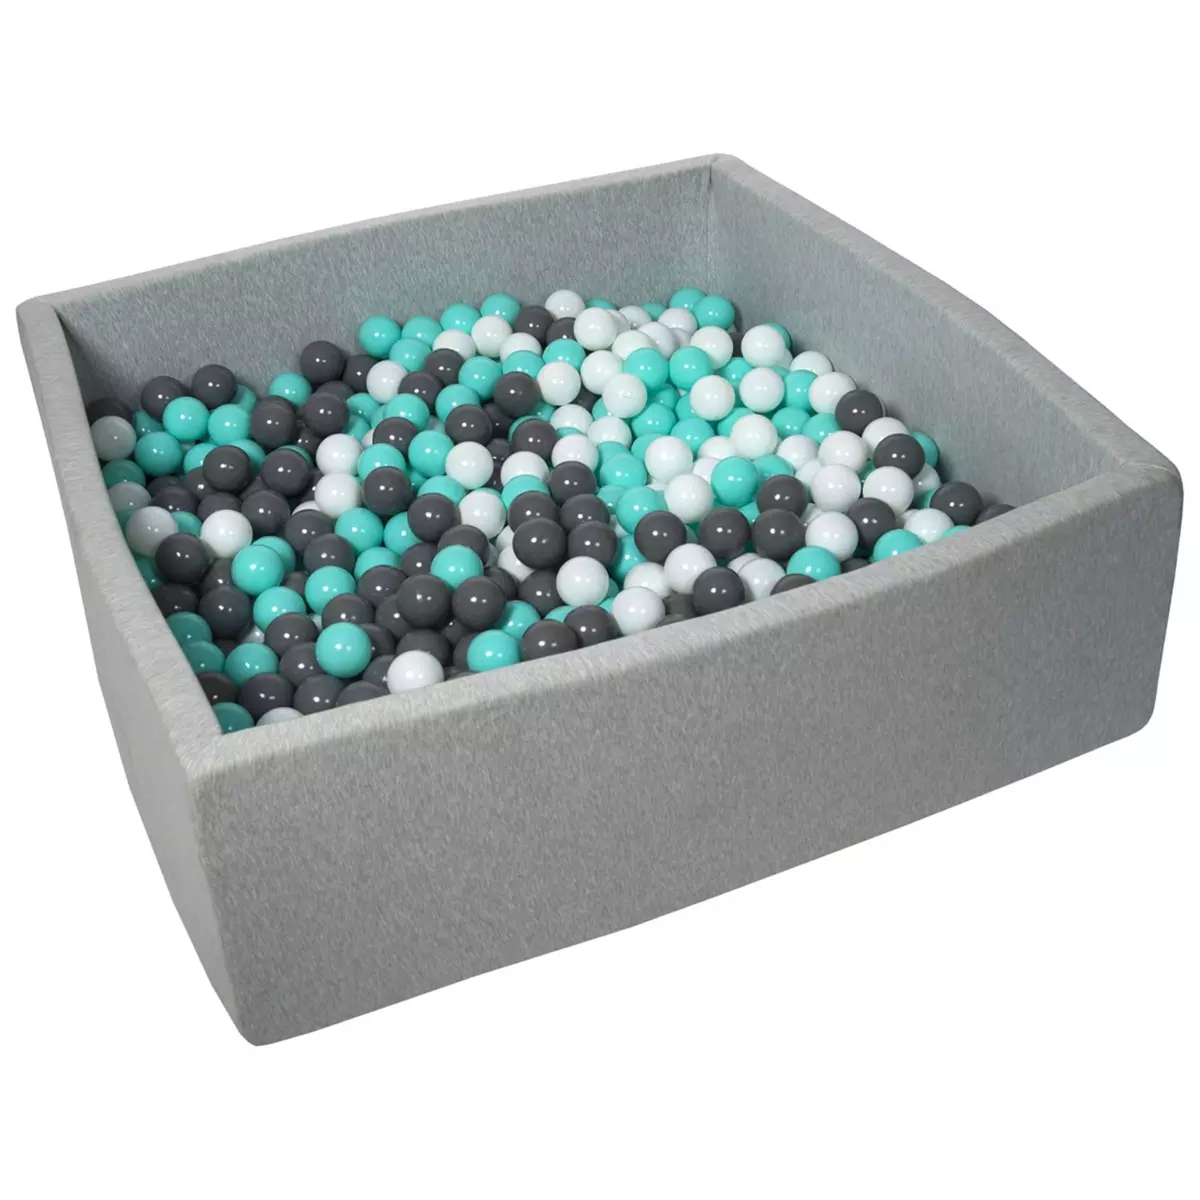  Piscine à balles pour enfant, 120x120 cm, Aire de jeu + 900 balles blanc, gris, turquoise